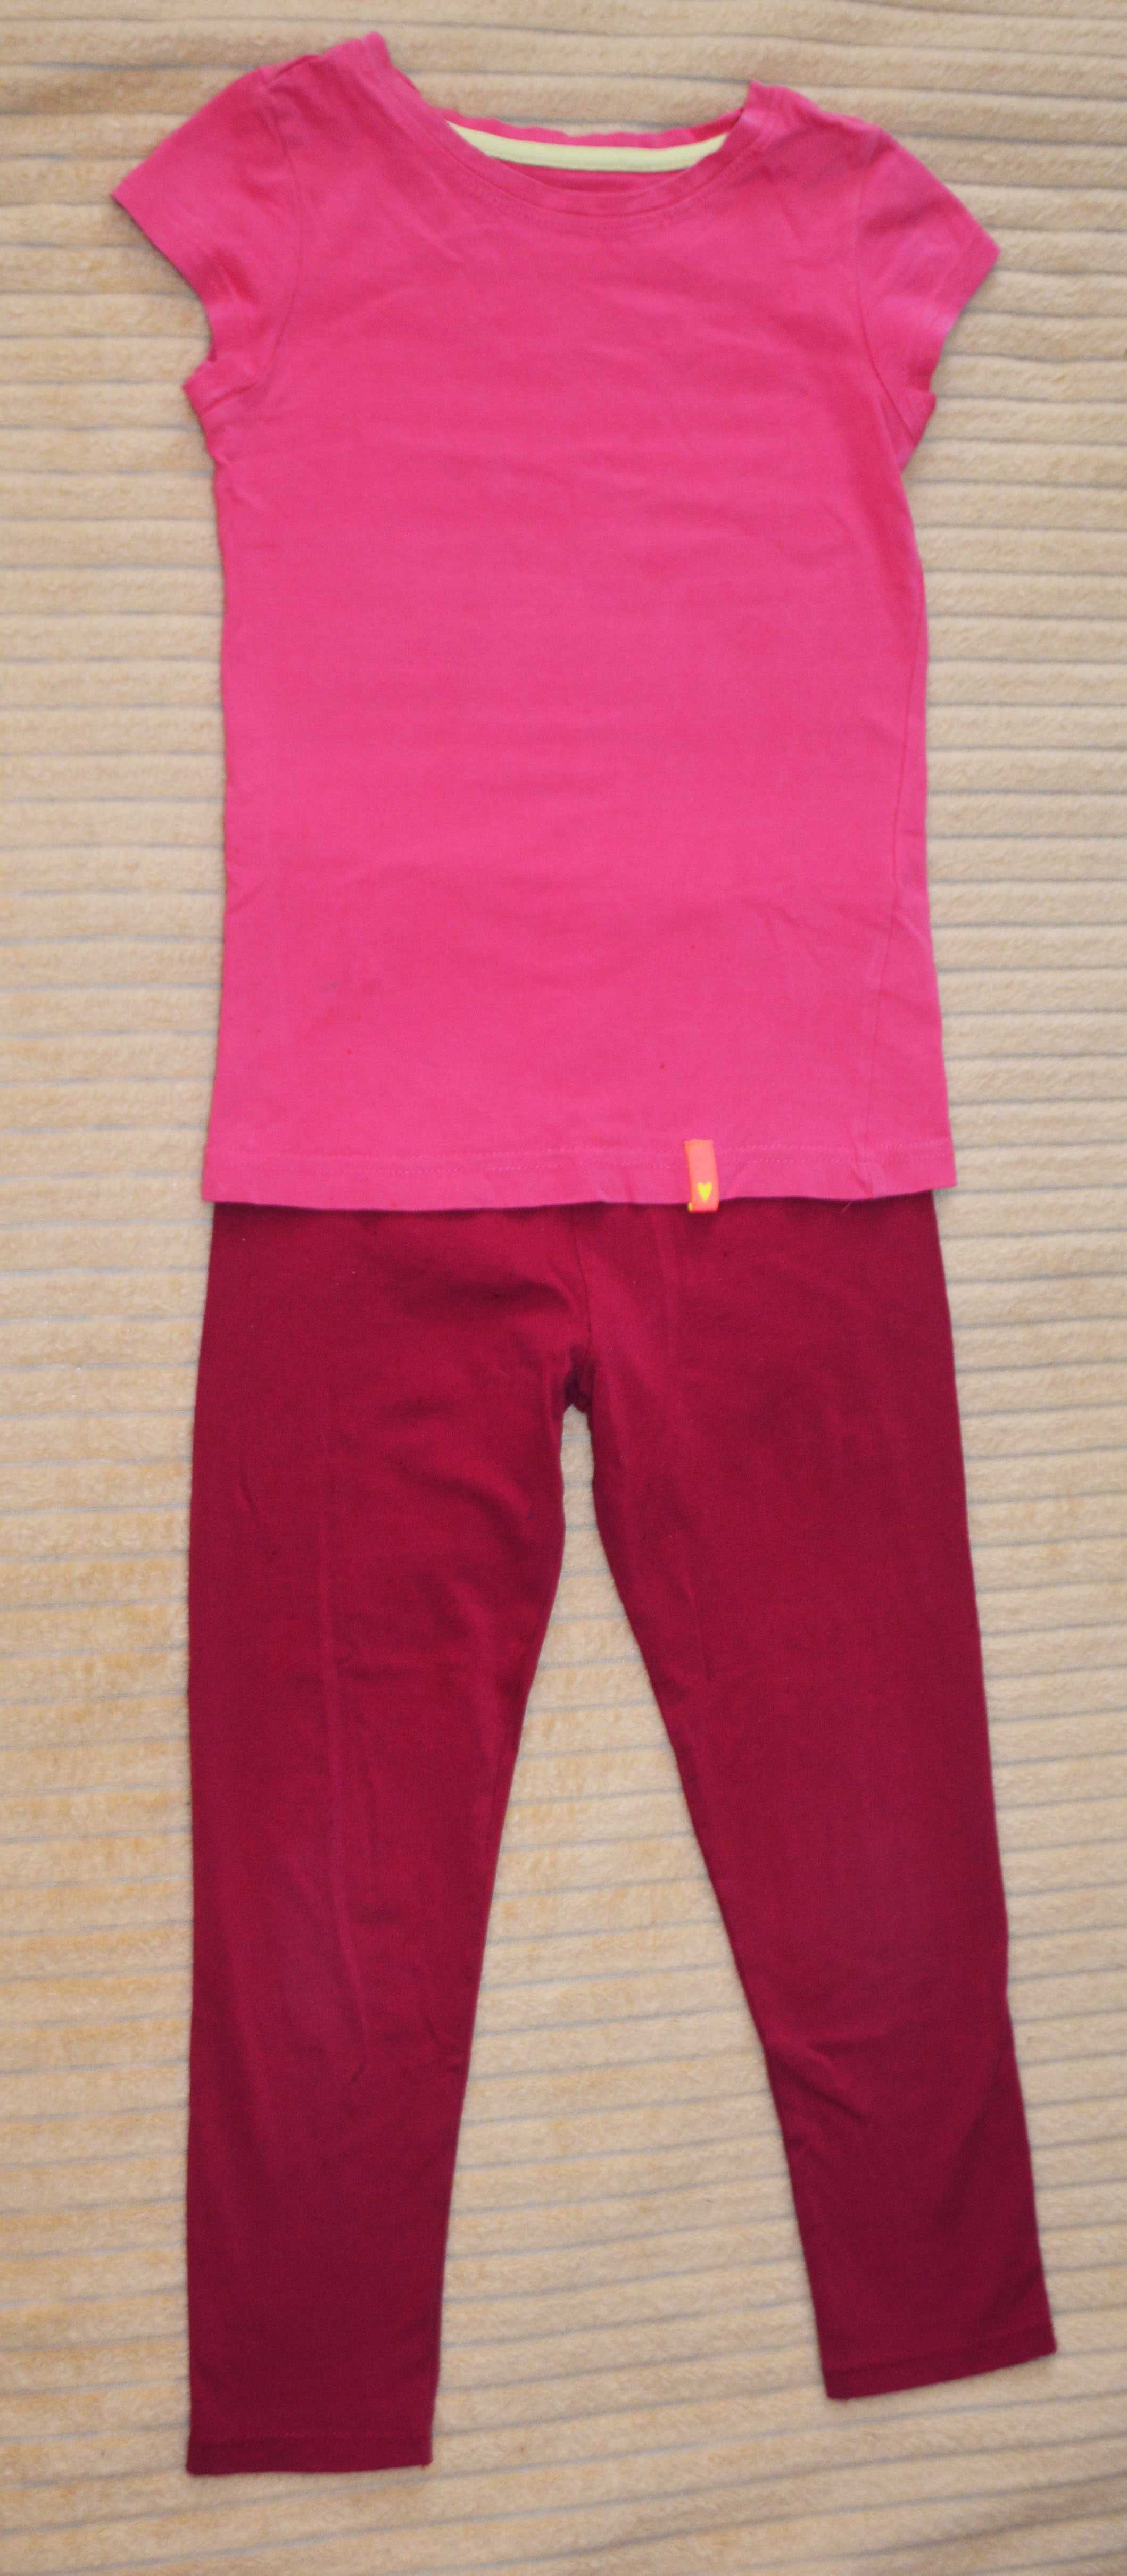 Комплект детской одежды (реглан, футболка, лосины) на возраст 6-7 лет